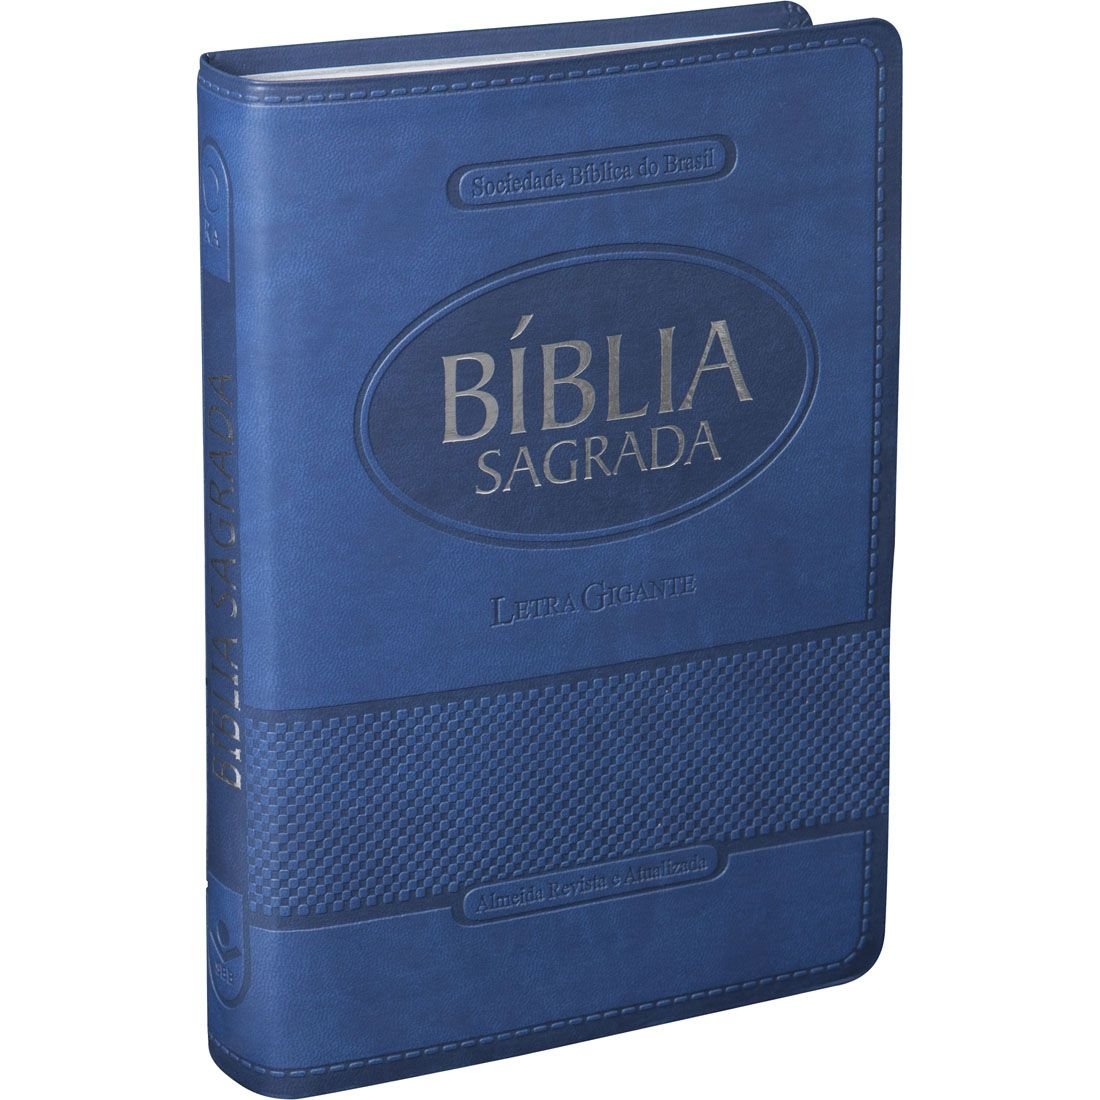 Bíblia Sagrada Letra Gigante com índice e zíper - Couro sintético Preto:  Almeida Revista e Atualizada (ARA)